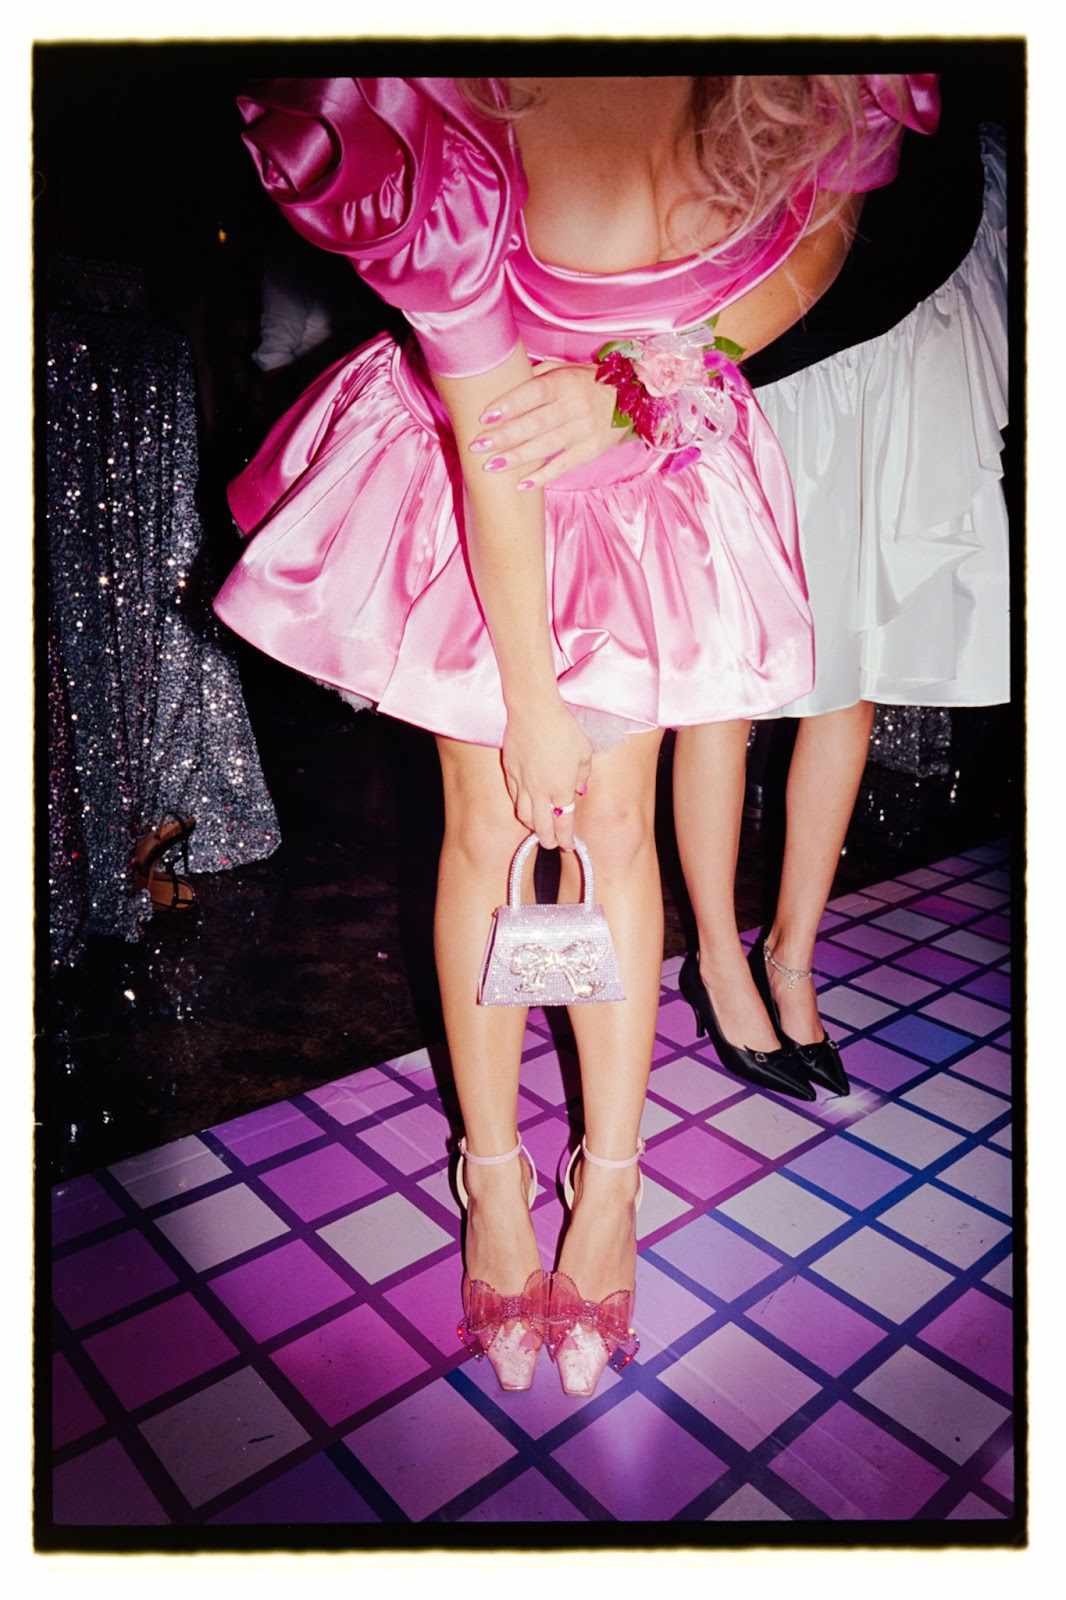 Sydney Suin em um vestido rosa com um vestido curto de corsário, ela era literalmente linda em rosa, colocando um mini-vestido de seda rosa com em forma de rosa, espartilho e um foo-can. Ela complementou a imagem com um saco de aut o-retrato Capri Micro Bag (US $ 480), Nalebe Dimante Slingback (US $ 750), Elizabeth Cole Ariana (US $ 138) e Elizabeth Cole Danika (375 dólares) - todos eles foram decorados por dez rosa Gems e, idealmente, combinados com um mini-vestido retrô-rush e um enrolamento espetacular.